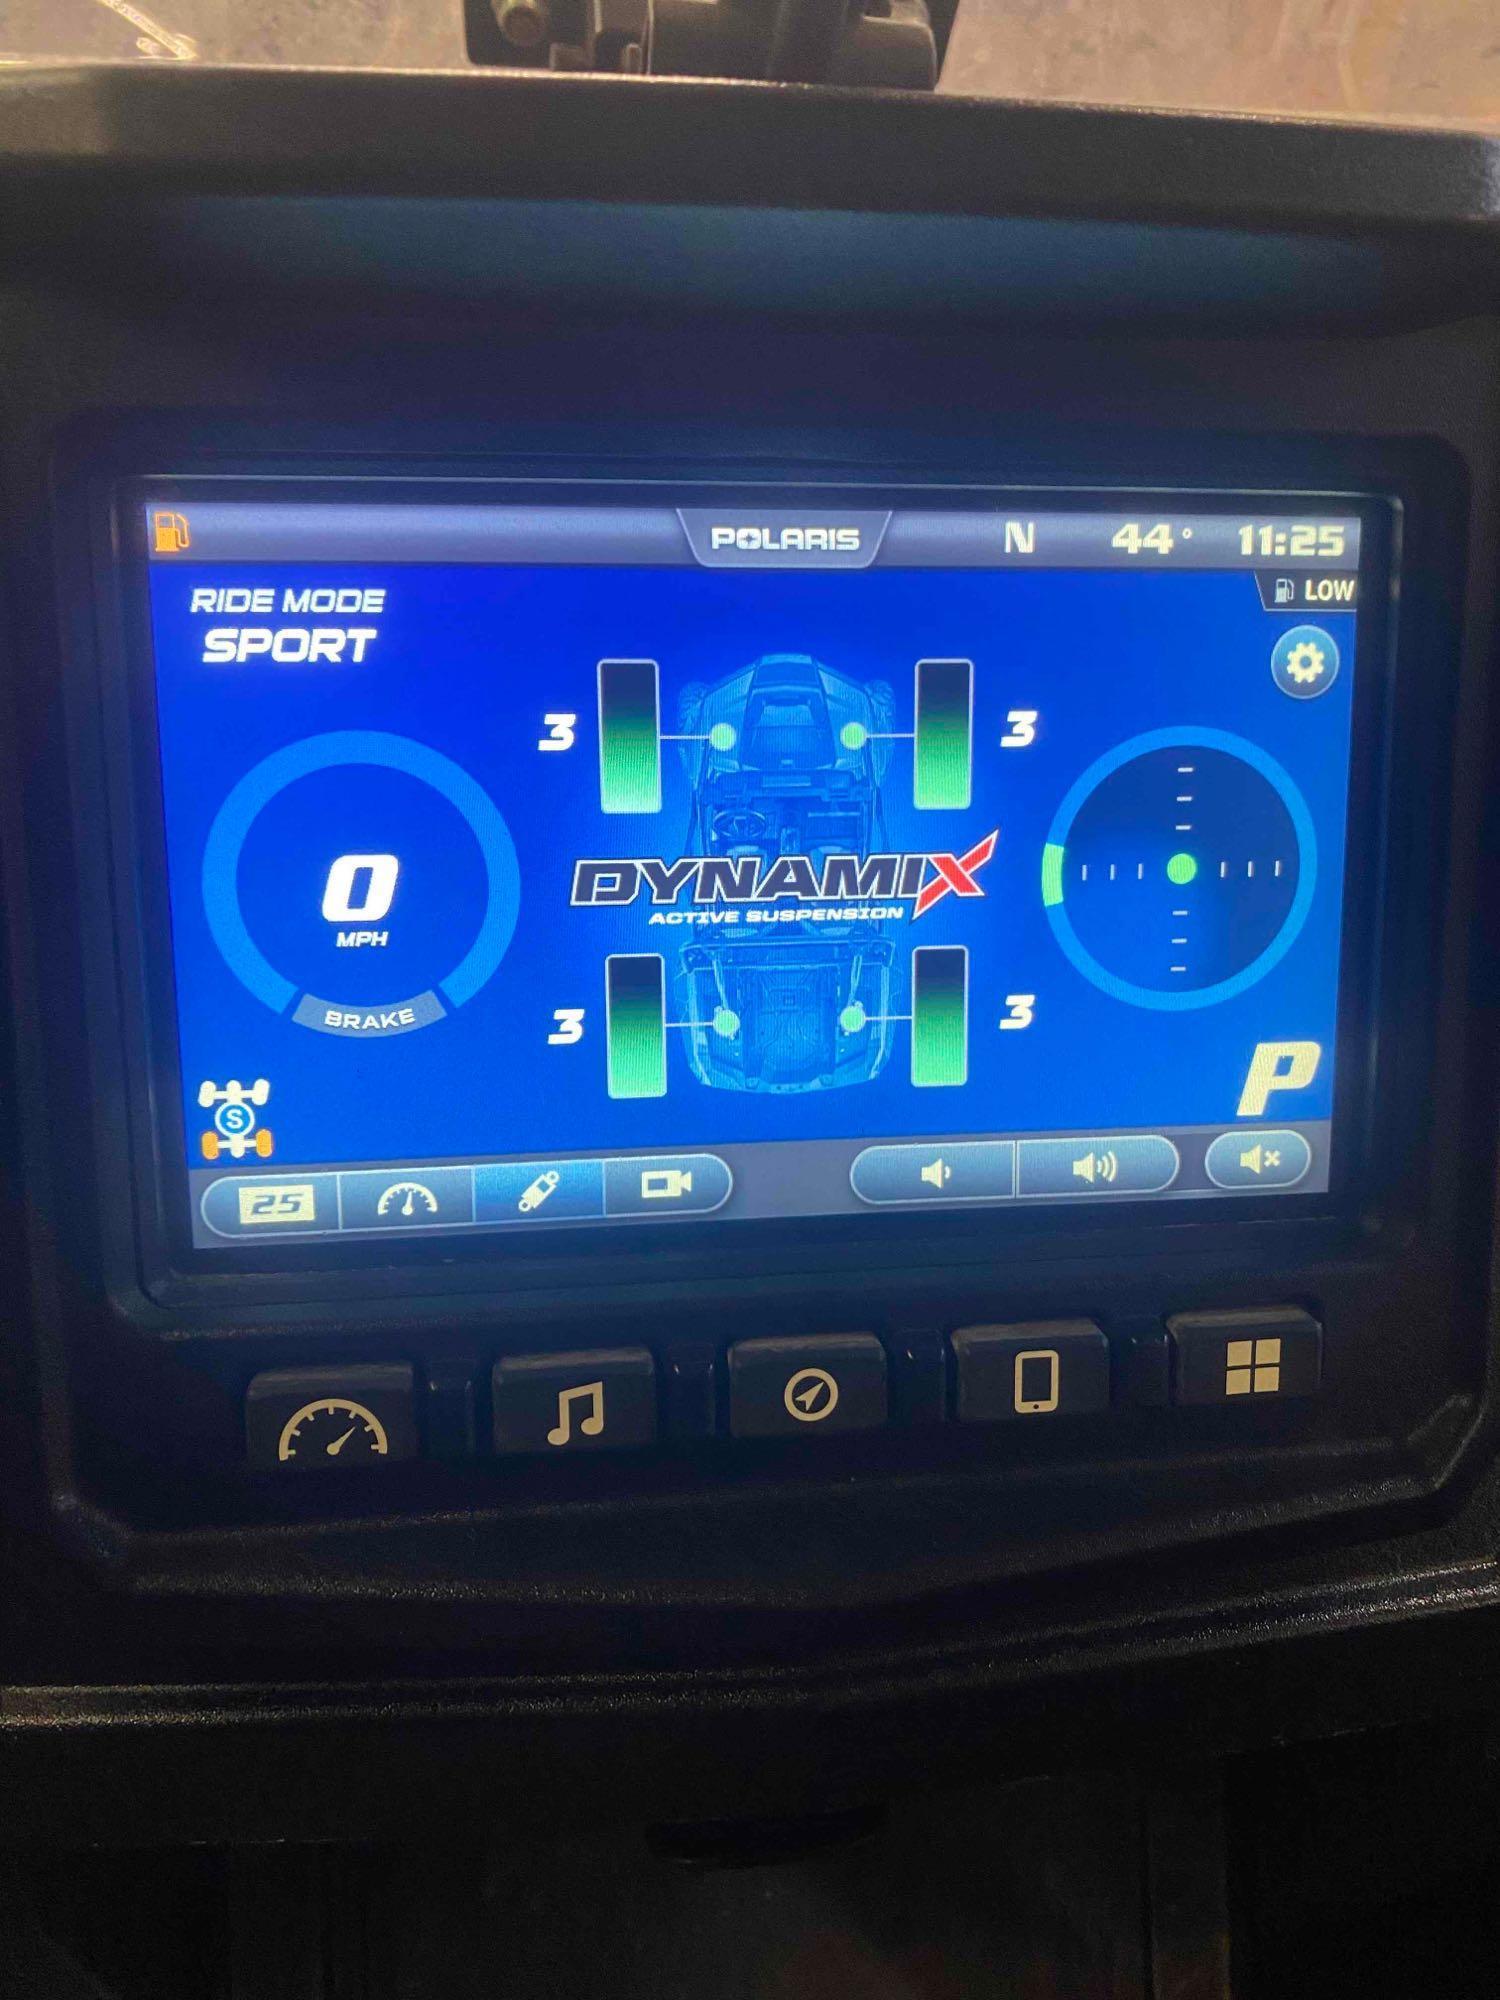 2018 Polaris RZR 1000 XP Turbo 4x4 UTV